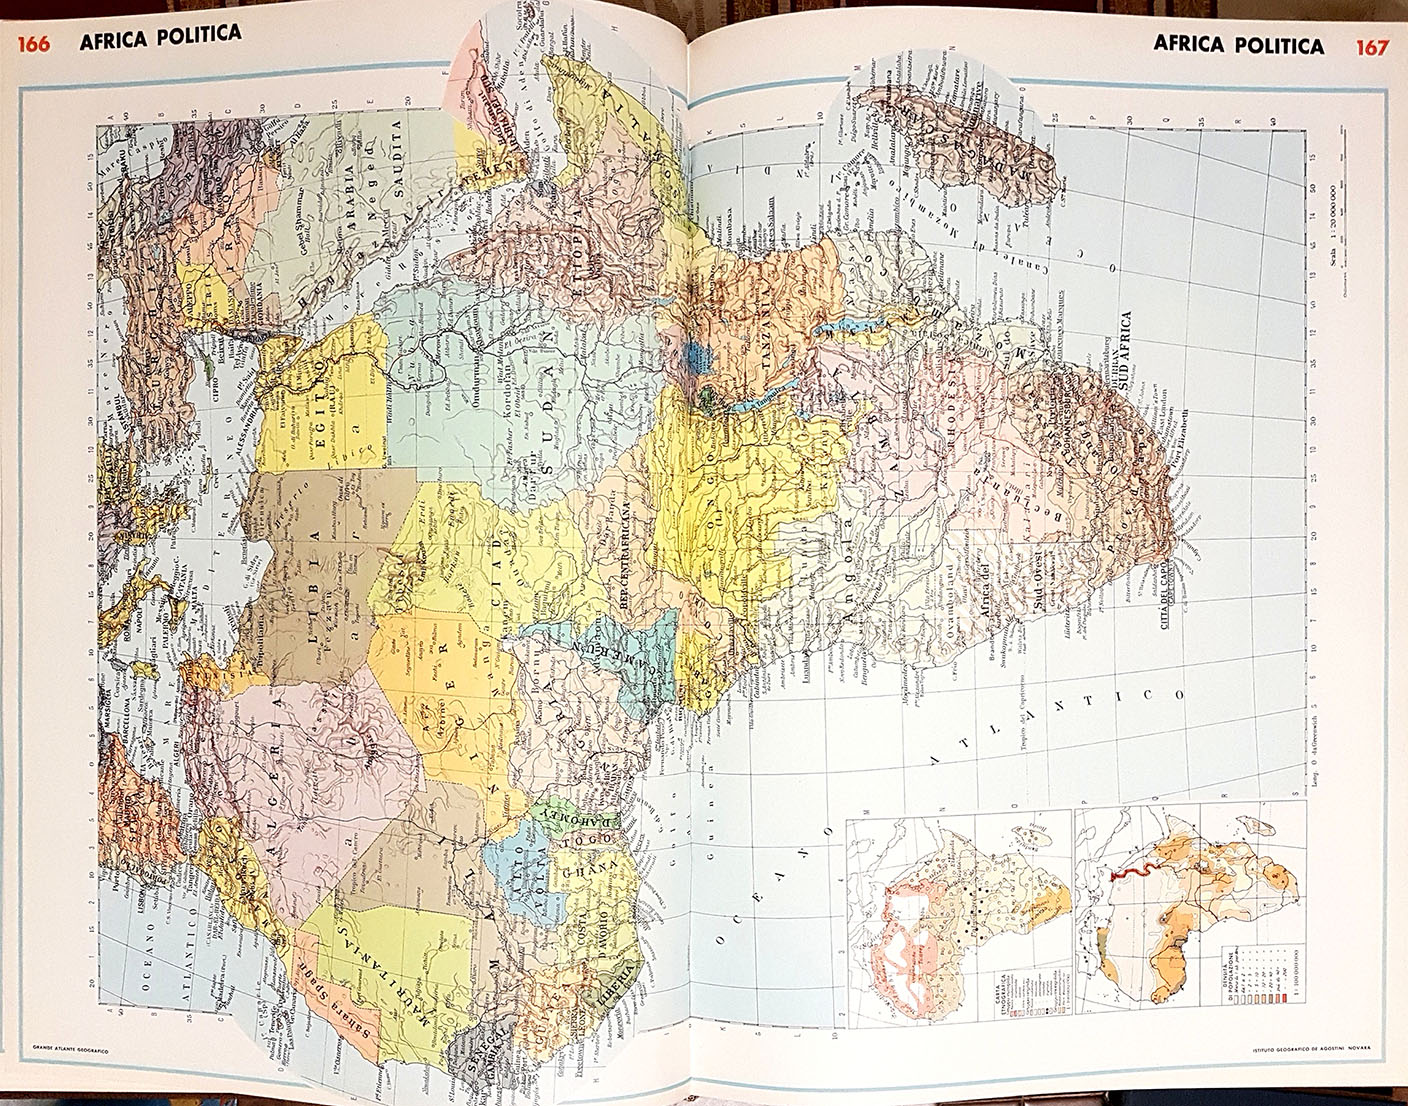 Atlante geografico del mondo - Libri e Riviste In vendita a Aosta